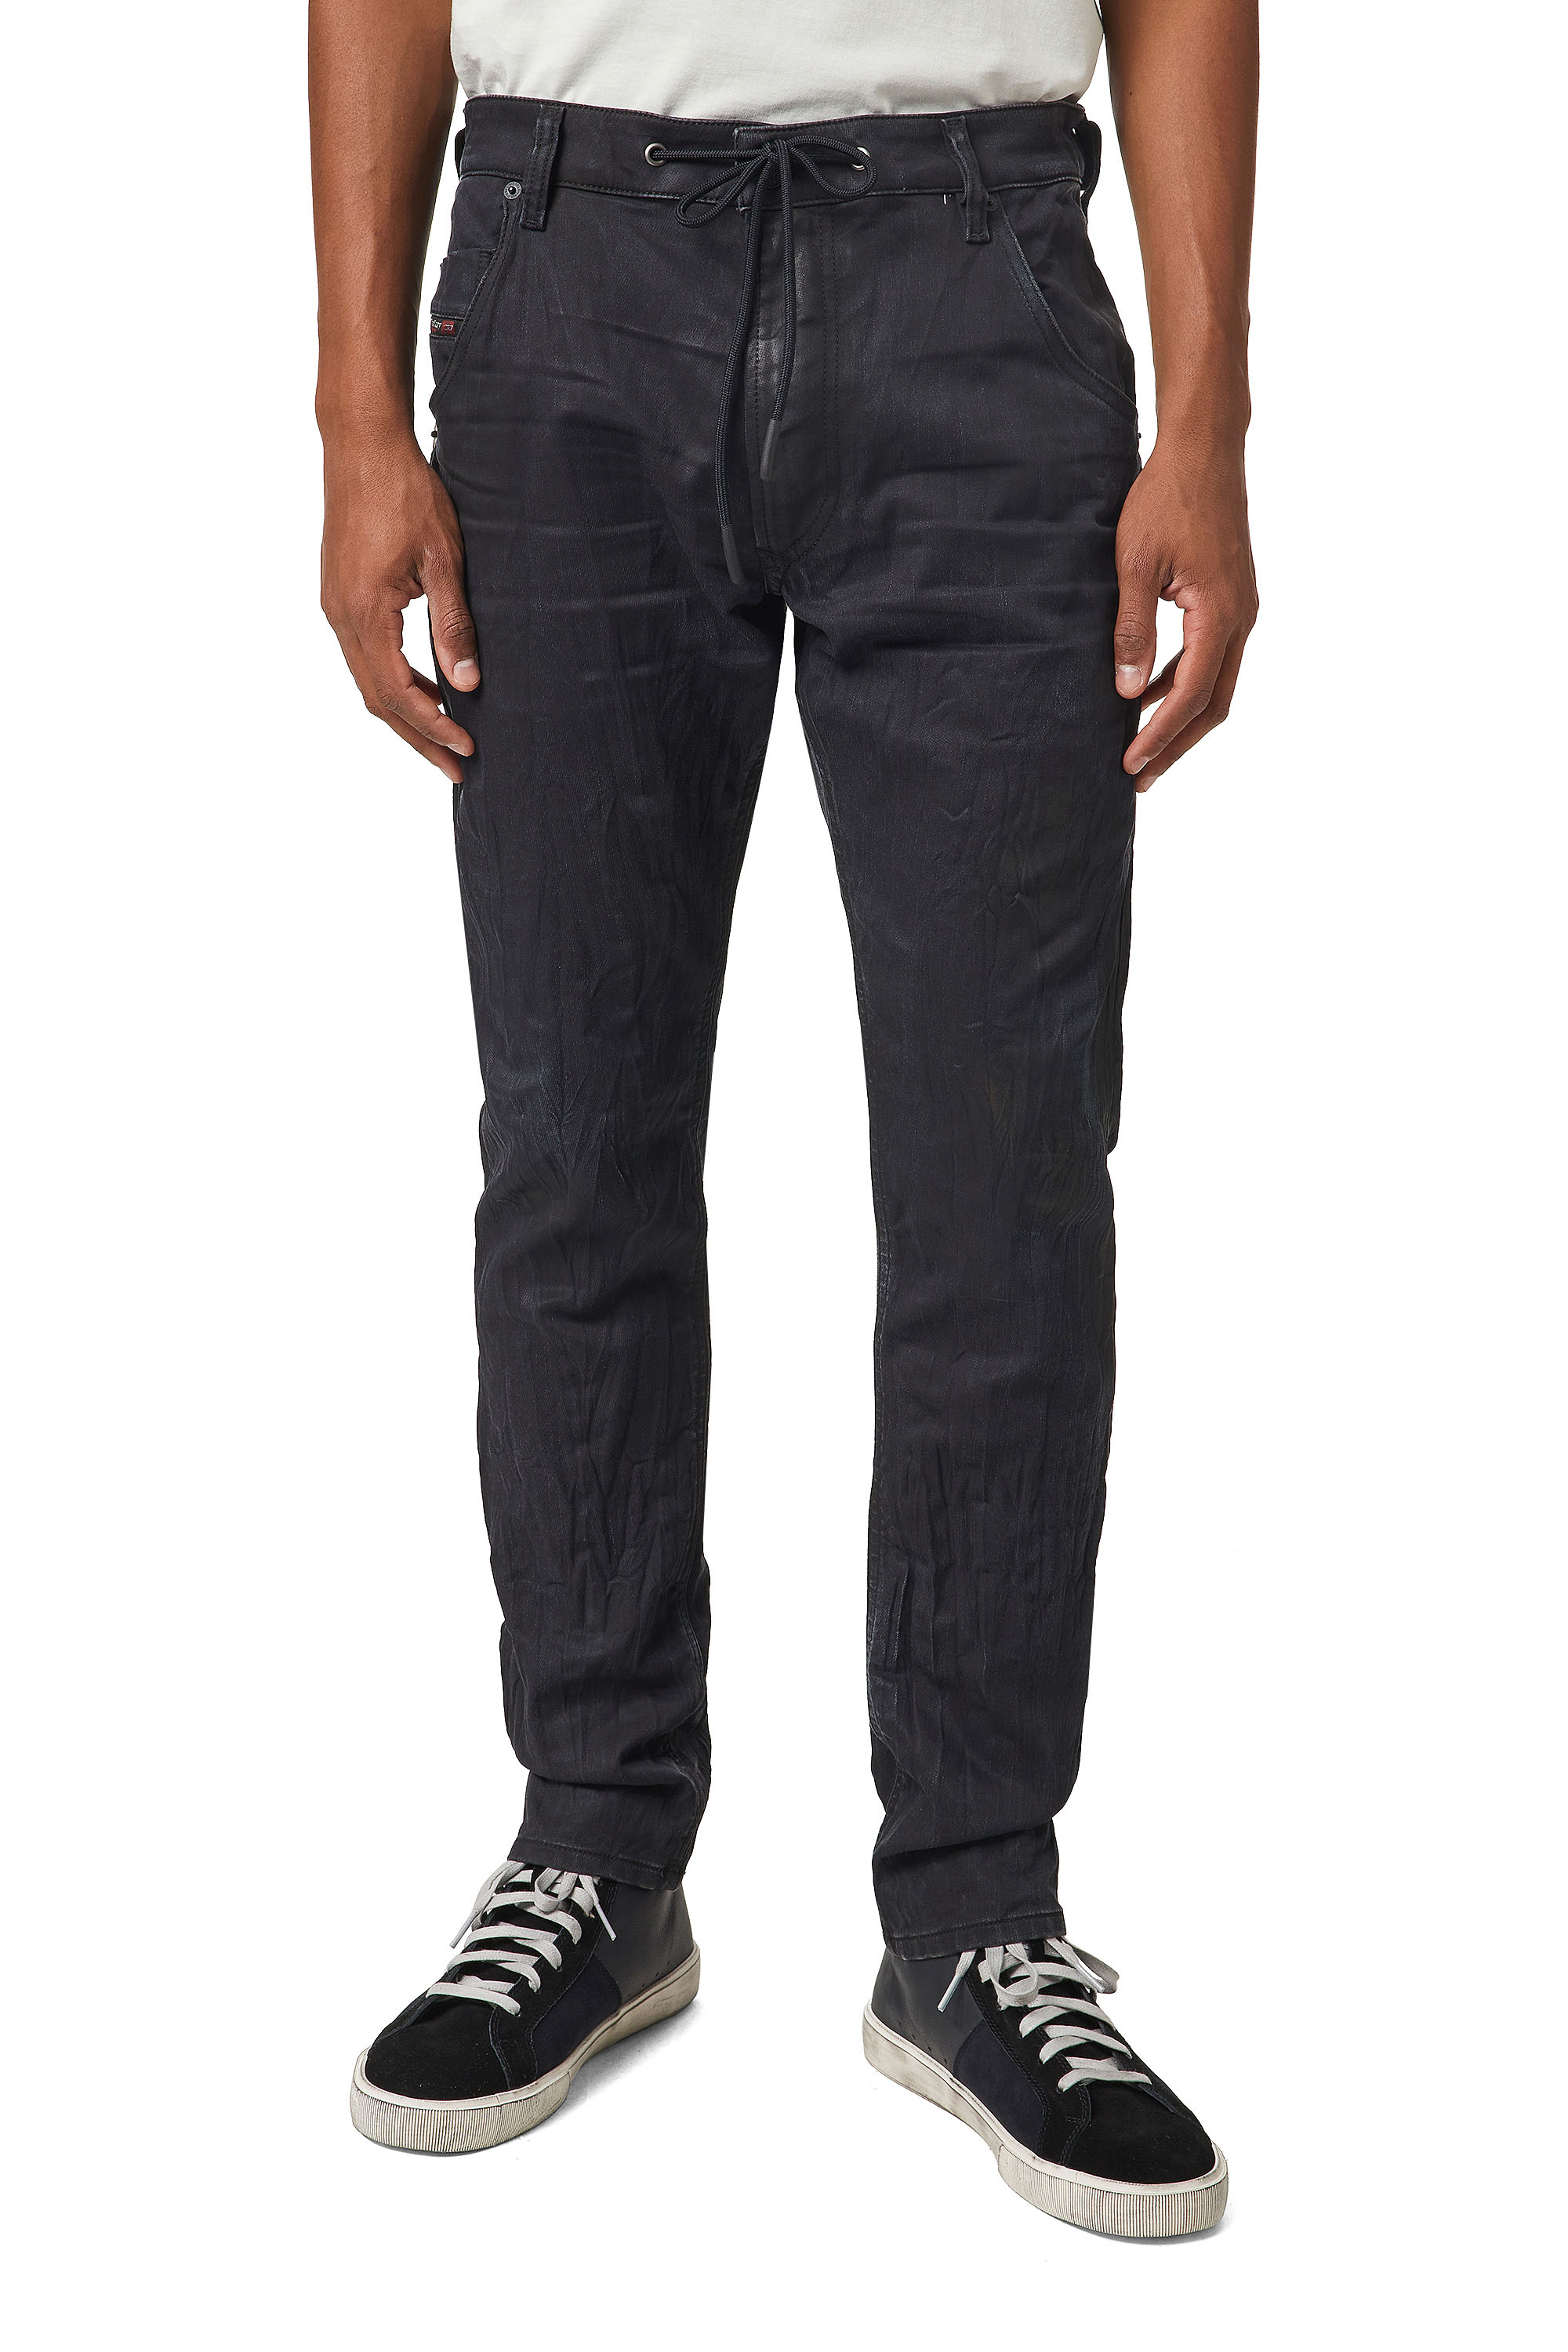 Diesel - Krooley JoggJeans® 069WB Tapered, Black/Dark Grey - Image 1